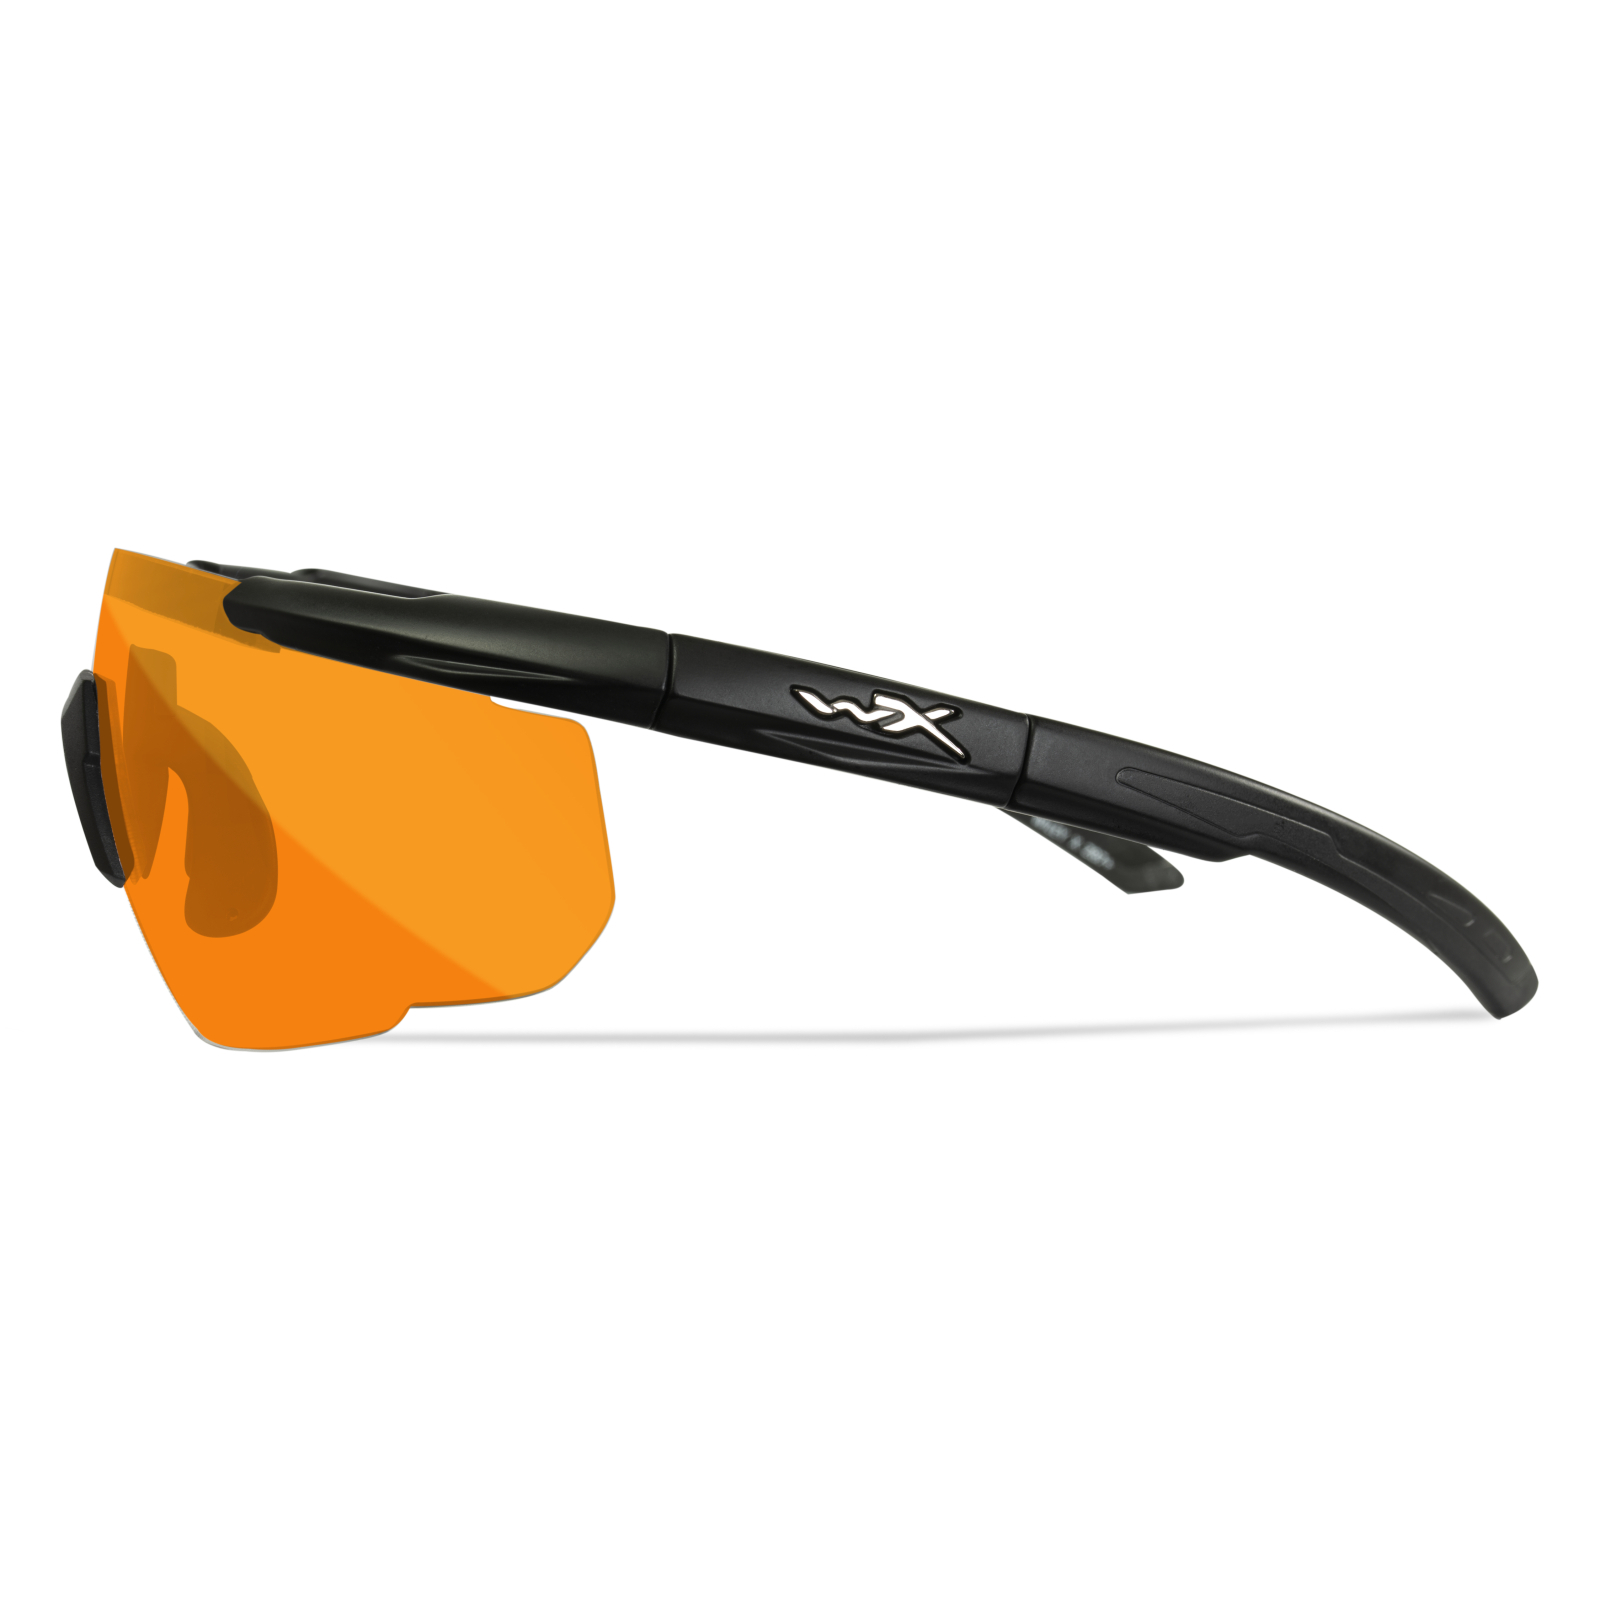 Тактические очки Wiley X SABER ADV Orange Lenses (301) изображение 2